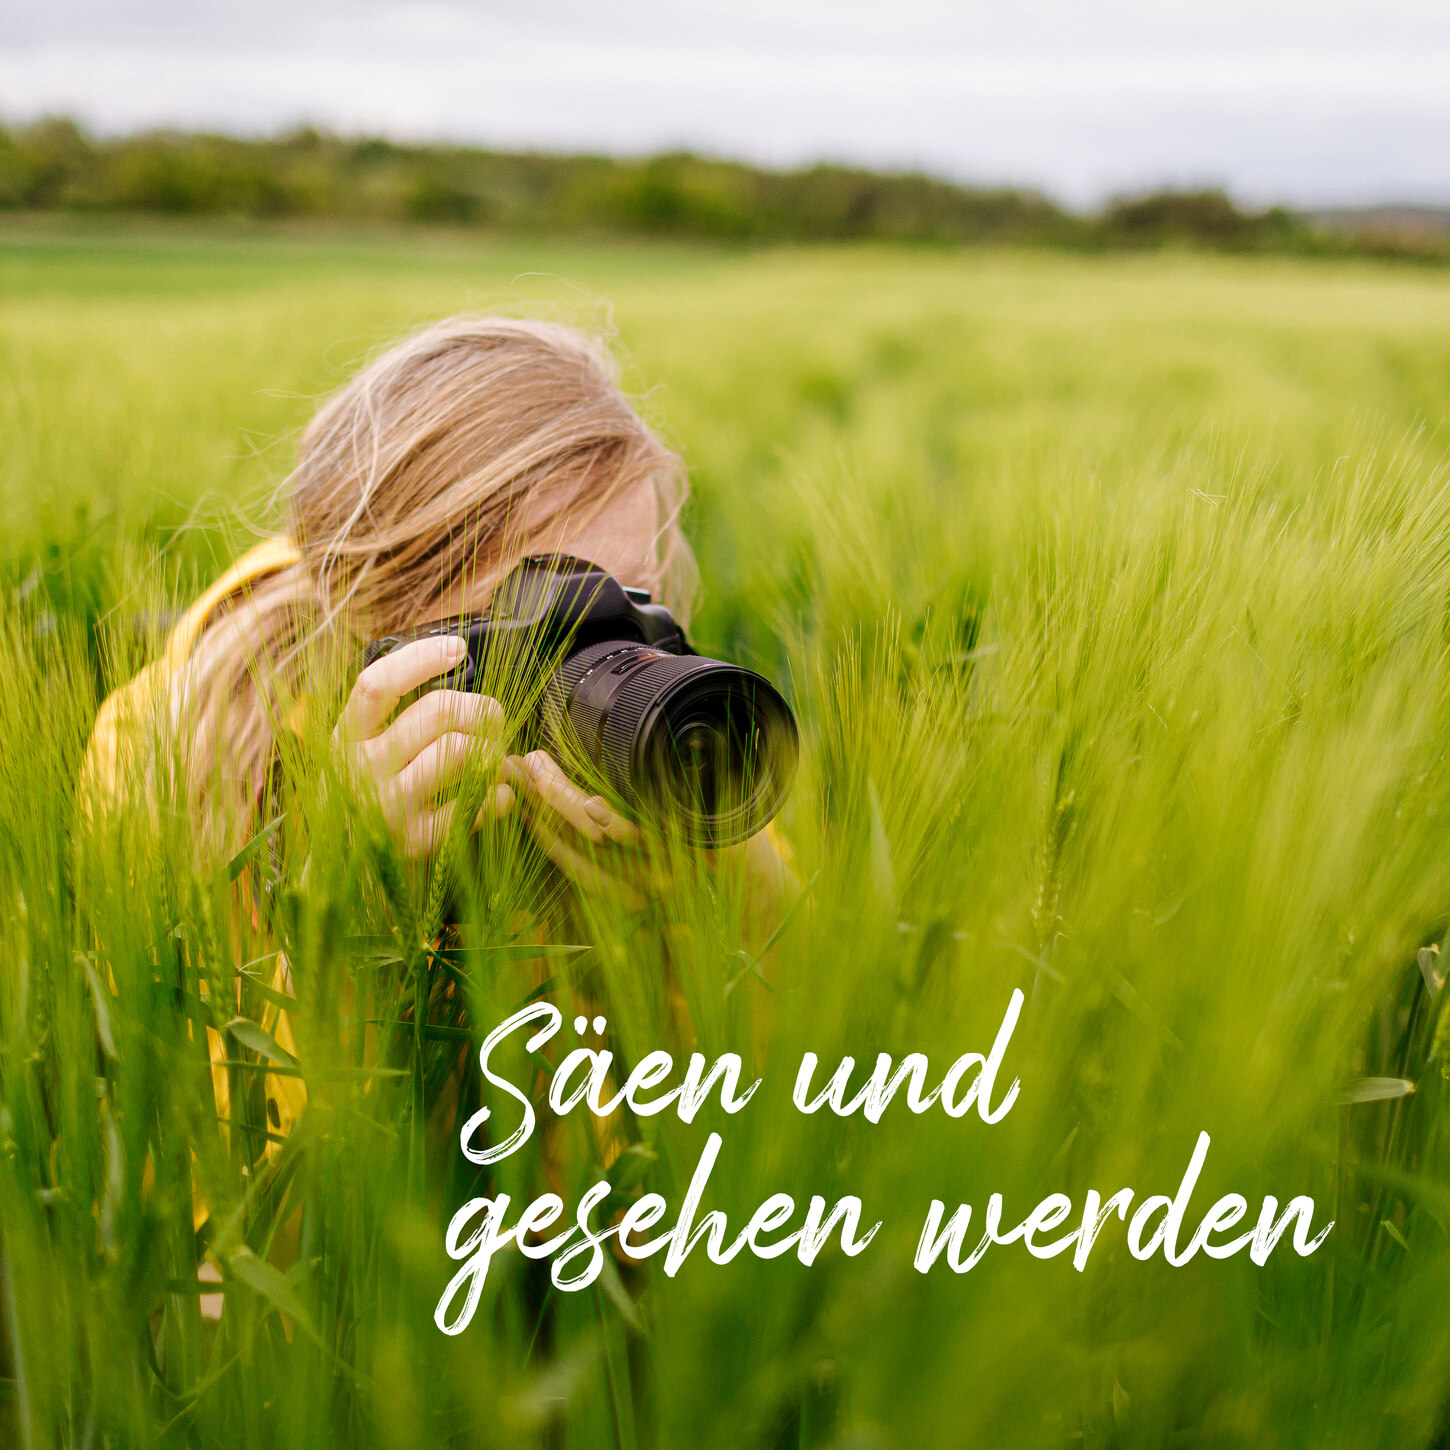 Fotowettbewerb »Mein grüner Traumberuf«: Foto einer Person, die mit einer Kamera inmitten von einem Getreidefeld sitzt, daneben der Schriftzug »Säen und gesehen werden«